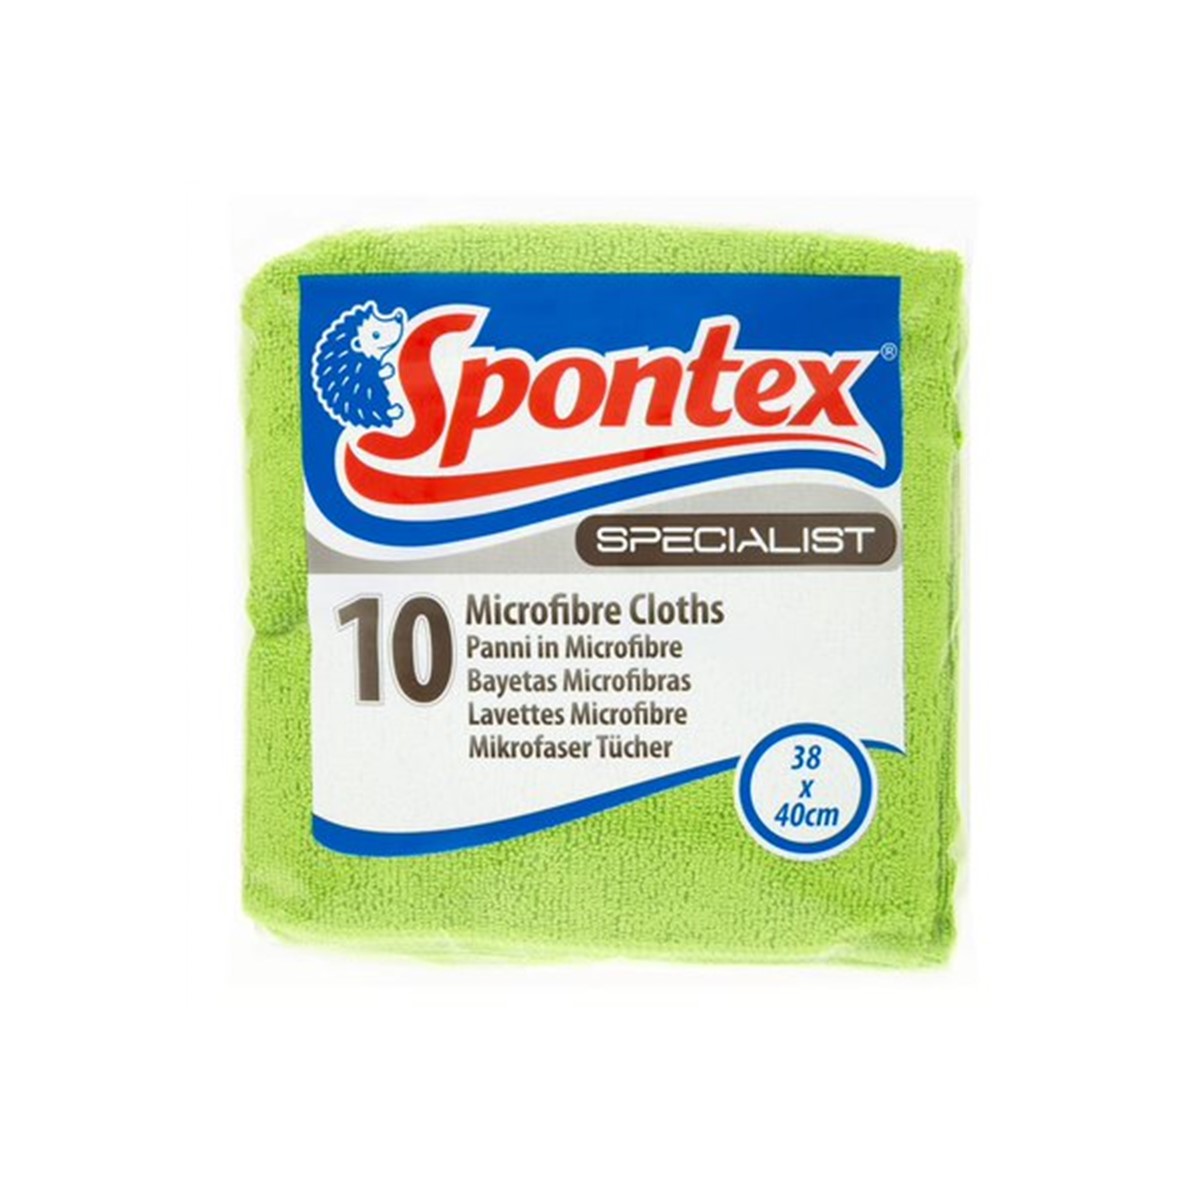 Spontex Microfibre Cloths - 10 cloths